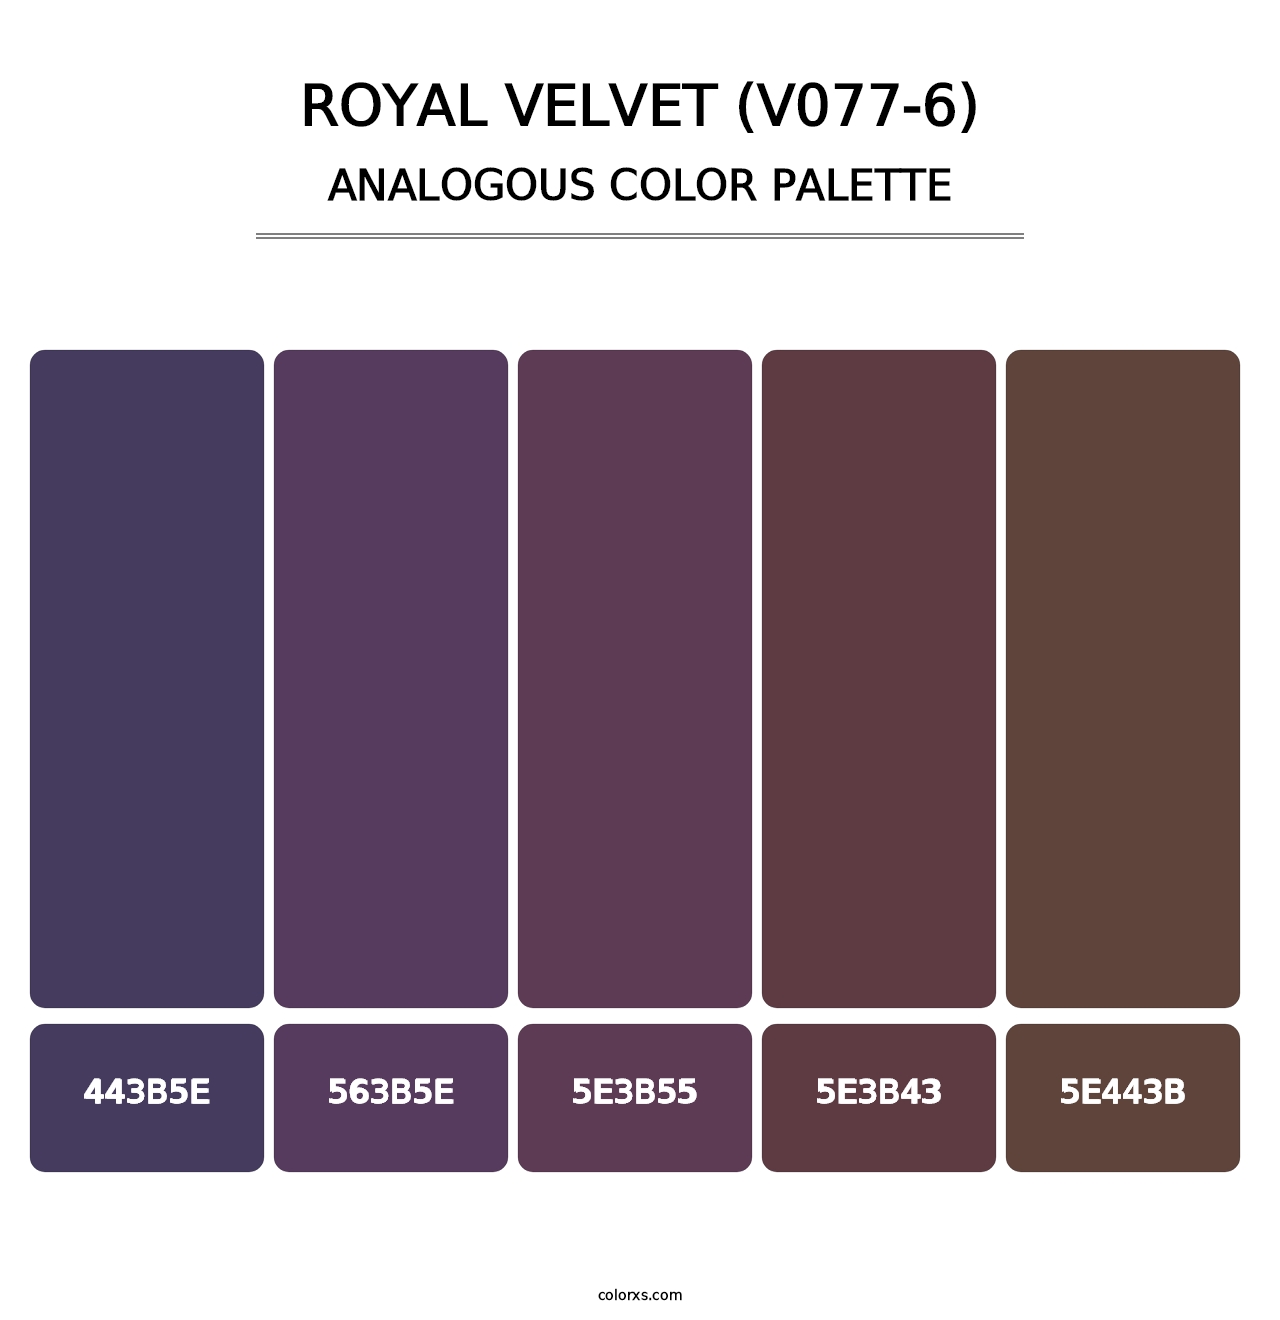 Royal Velvet (V077-6) - Analogous Color Palette